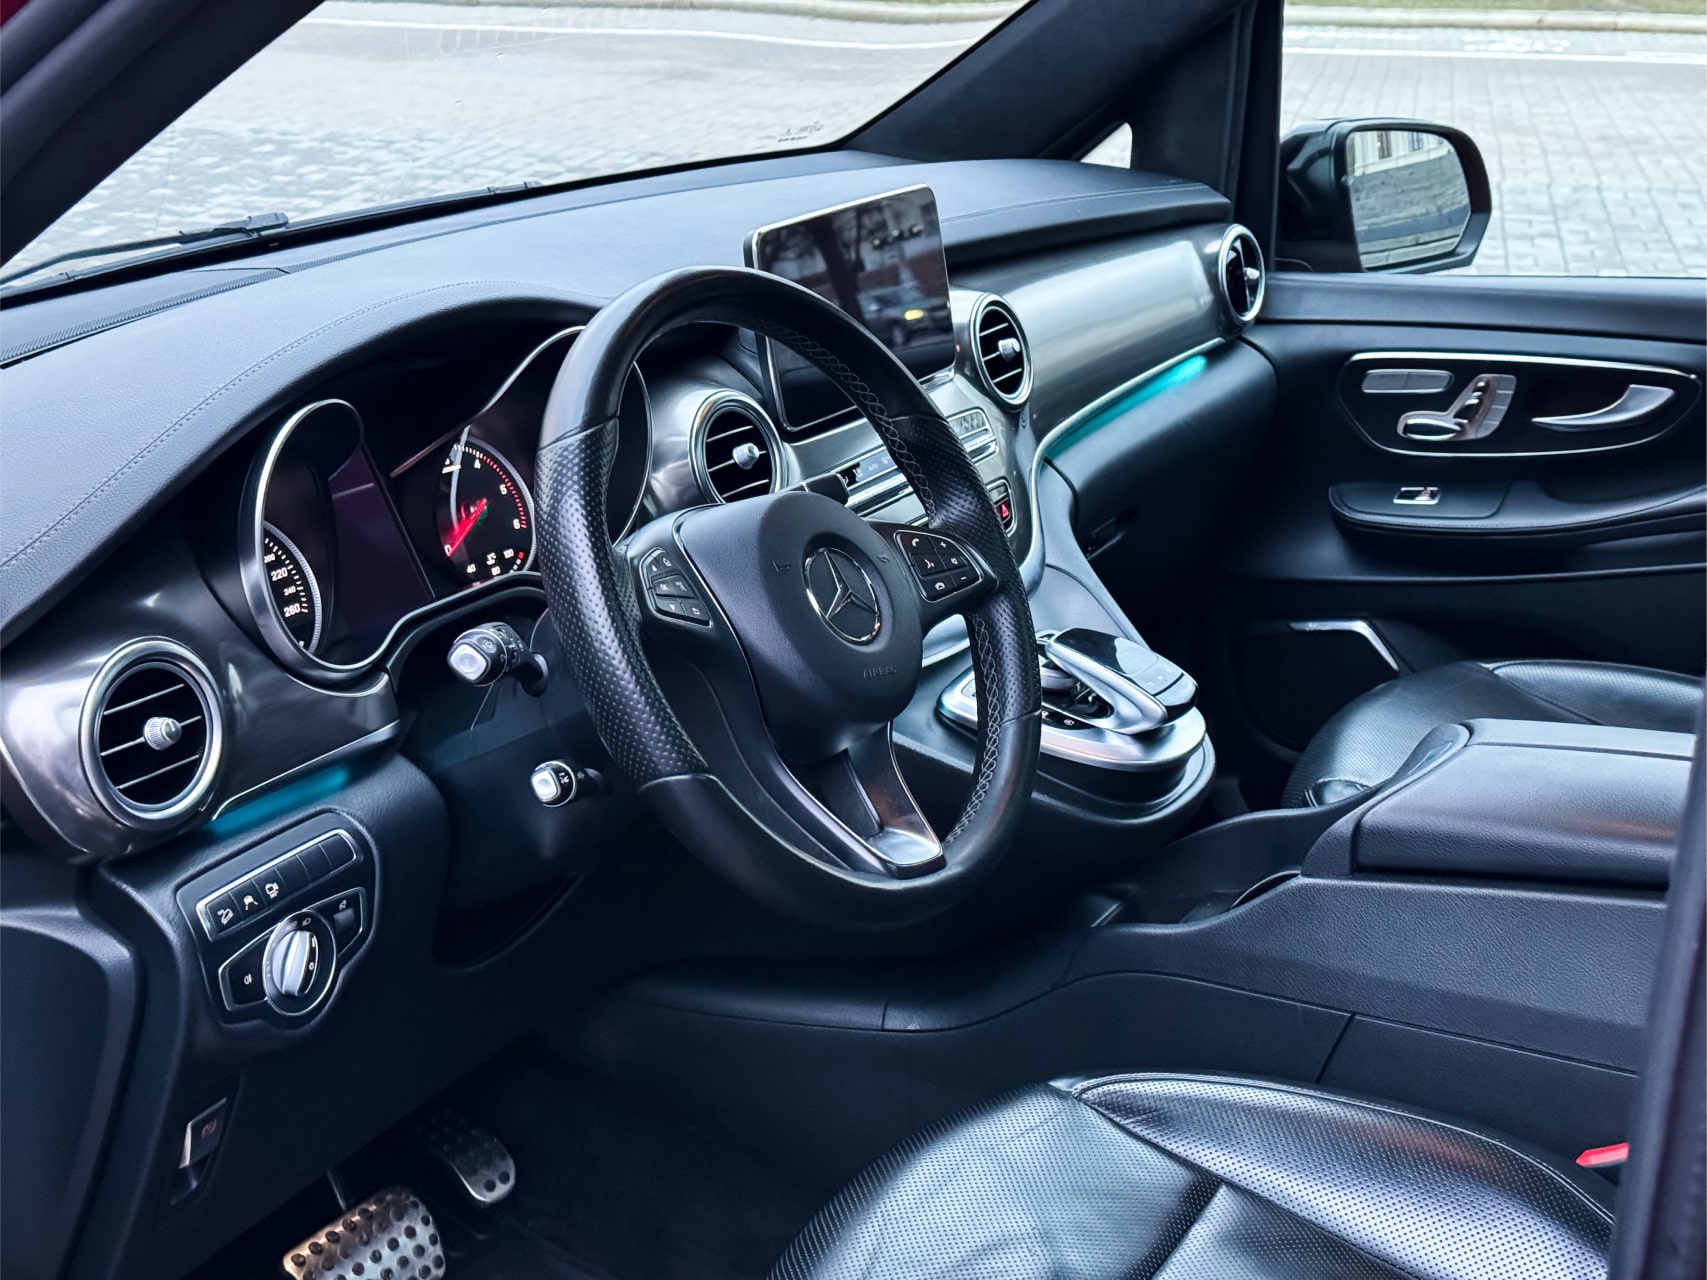 Аренда  Mercedes-Benz V-class V250 4MATIC  Brabus  6+1  7 класса 2018-2022 года в городе Минск от 155 $/сутки,  двигатель: ДТ , объем 2.0 литров, КАСКО (Мультидрайв), без водителя, вид 2 - West Group